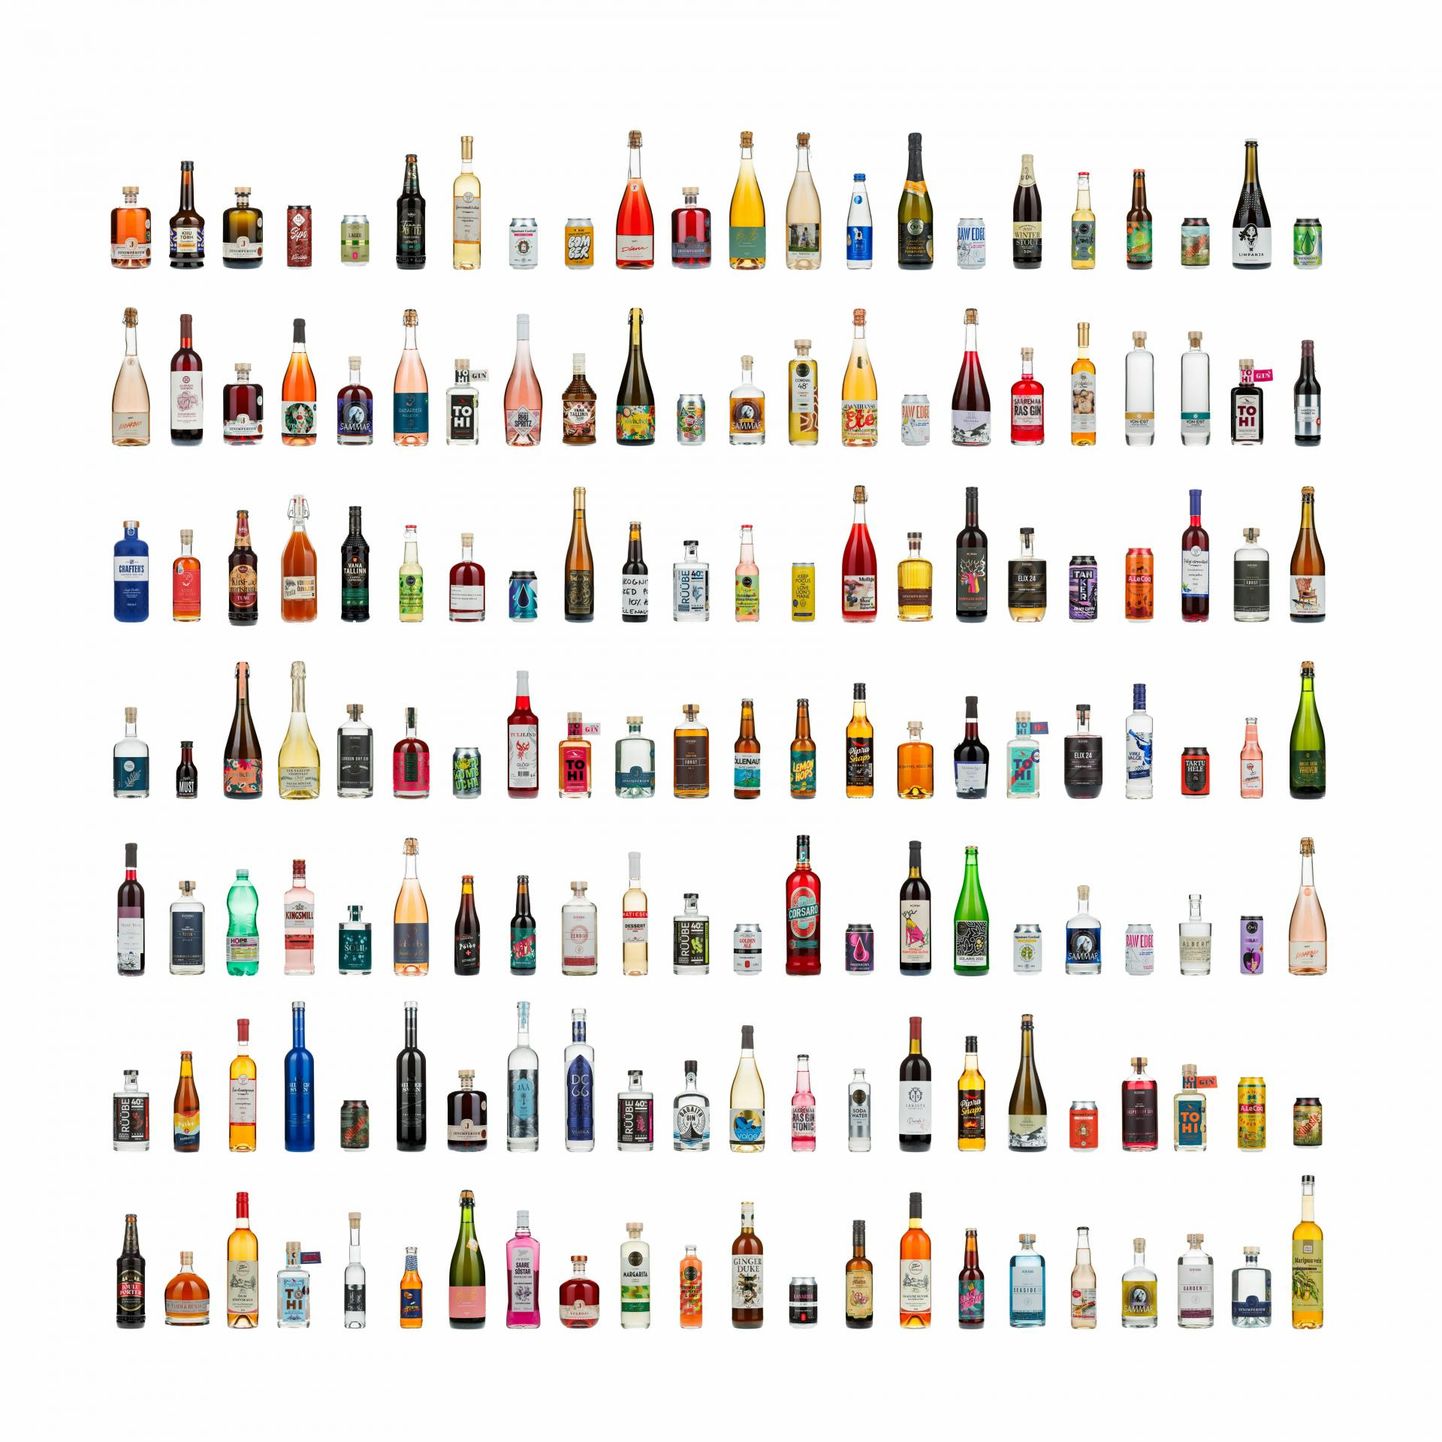 Joogid jagati pimedegustatsioonil hindamiseks stiililt, liigilt ja maitseprofiililt 22 kategooriasse. FOTO: Lauri Laan